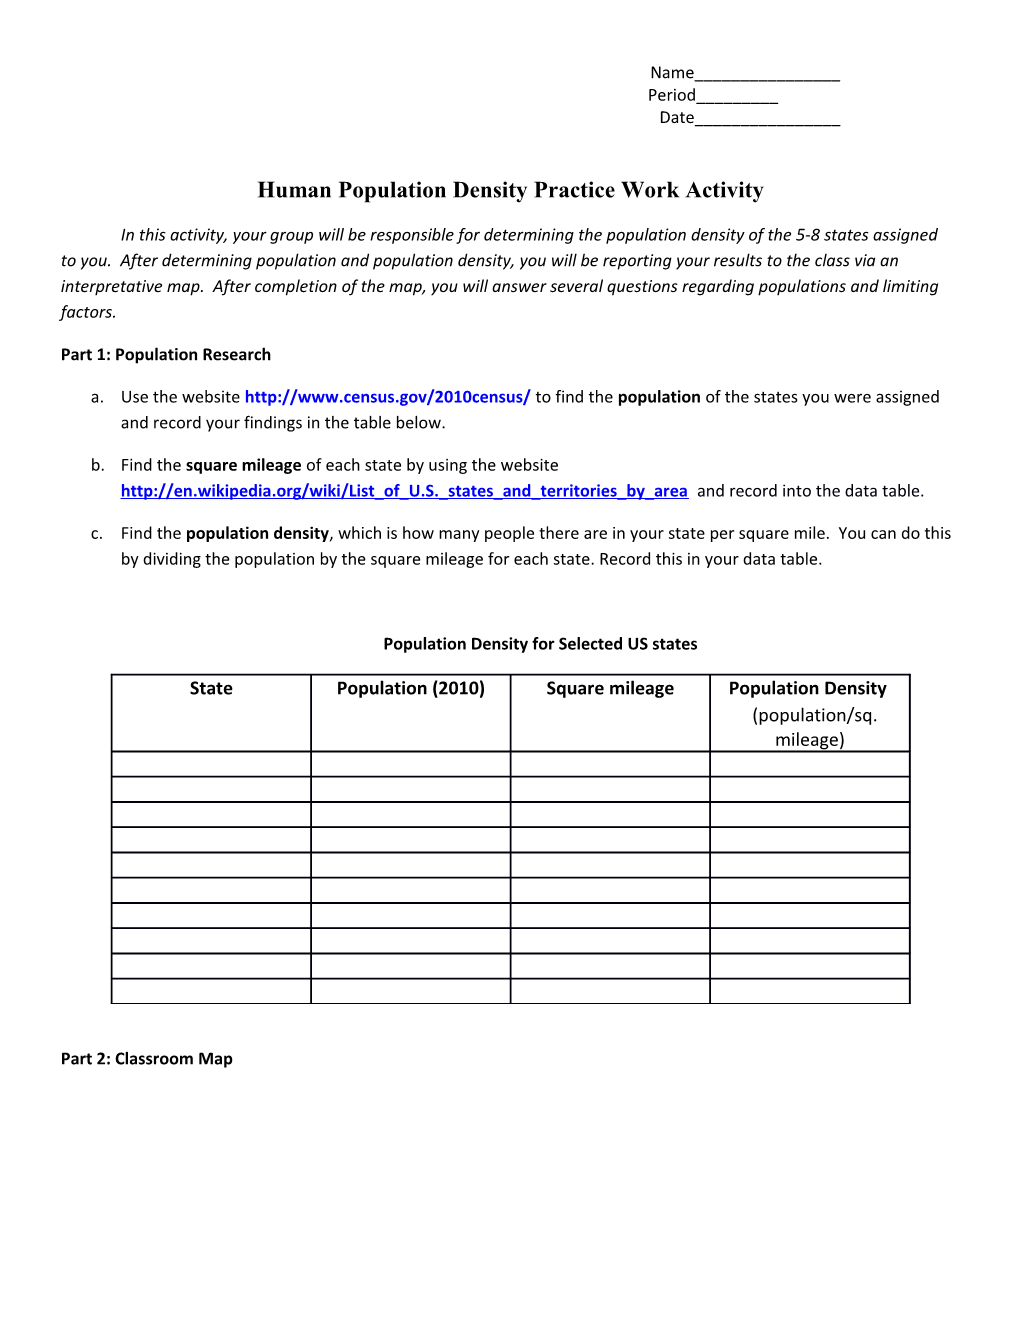 Human Population Density Practice Work Activity